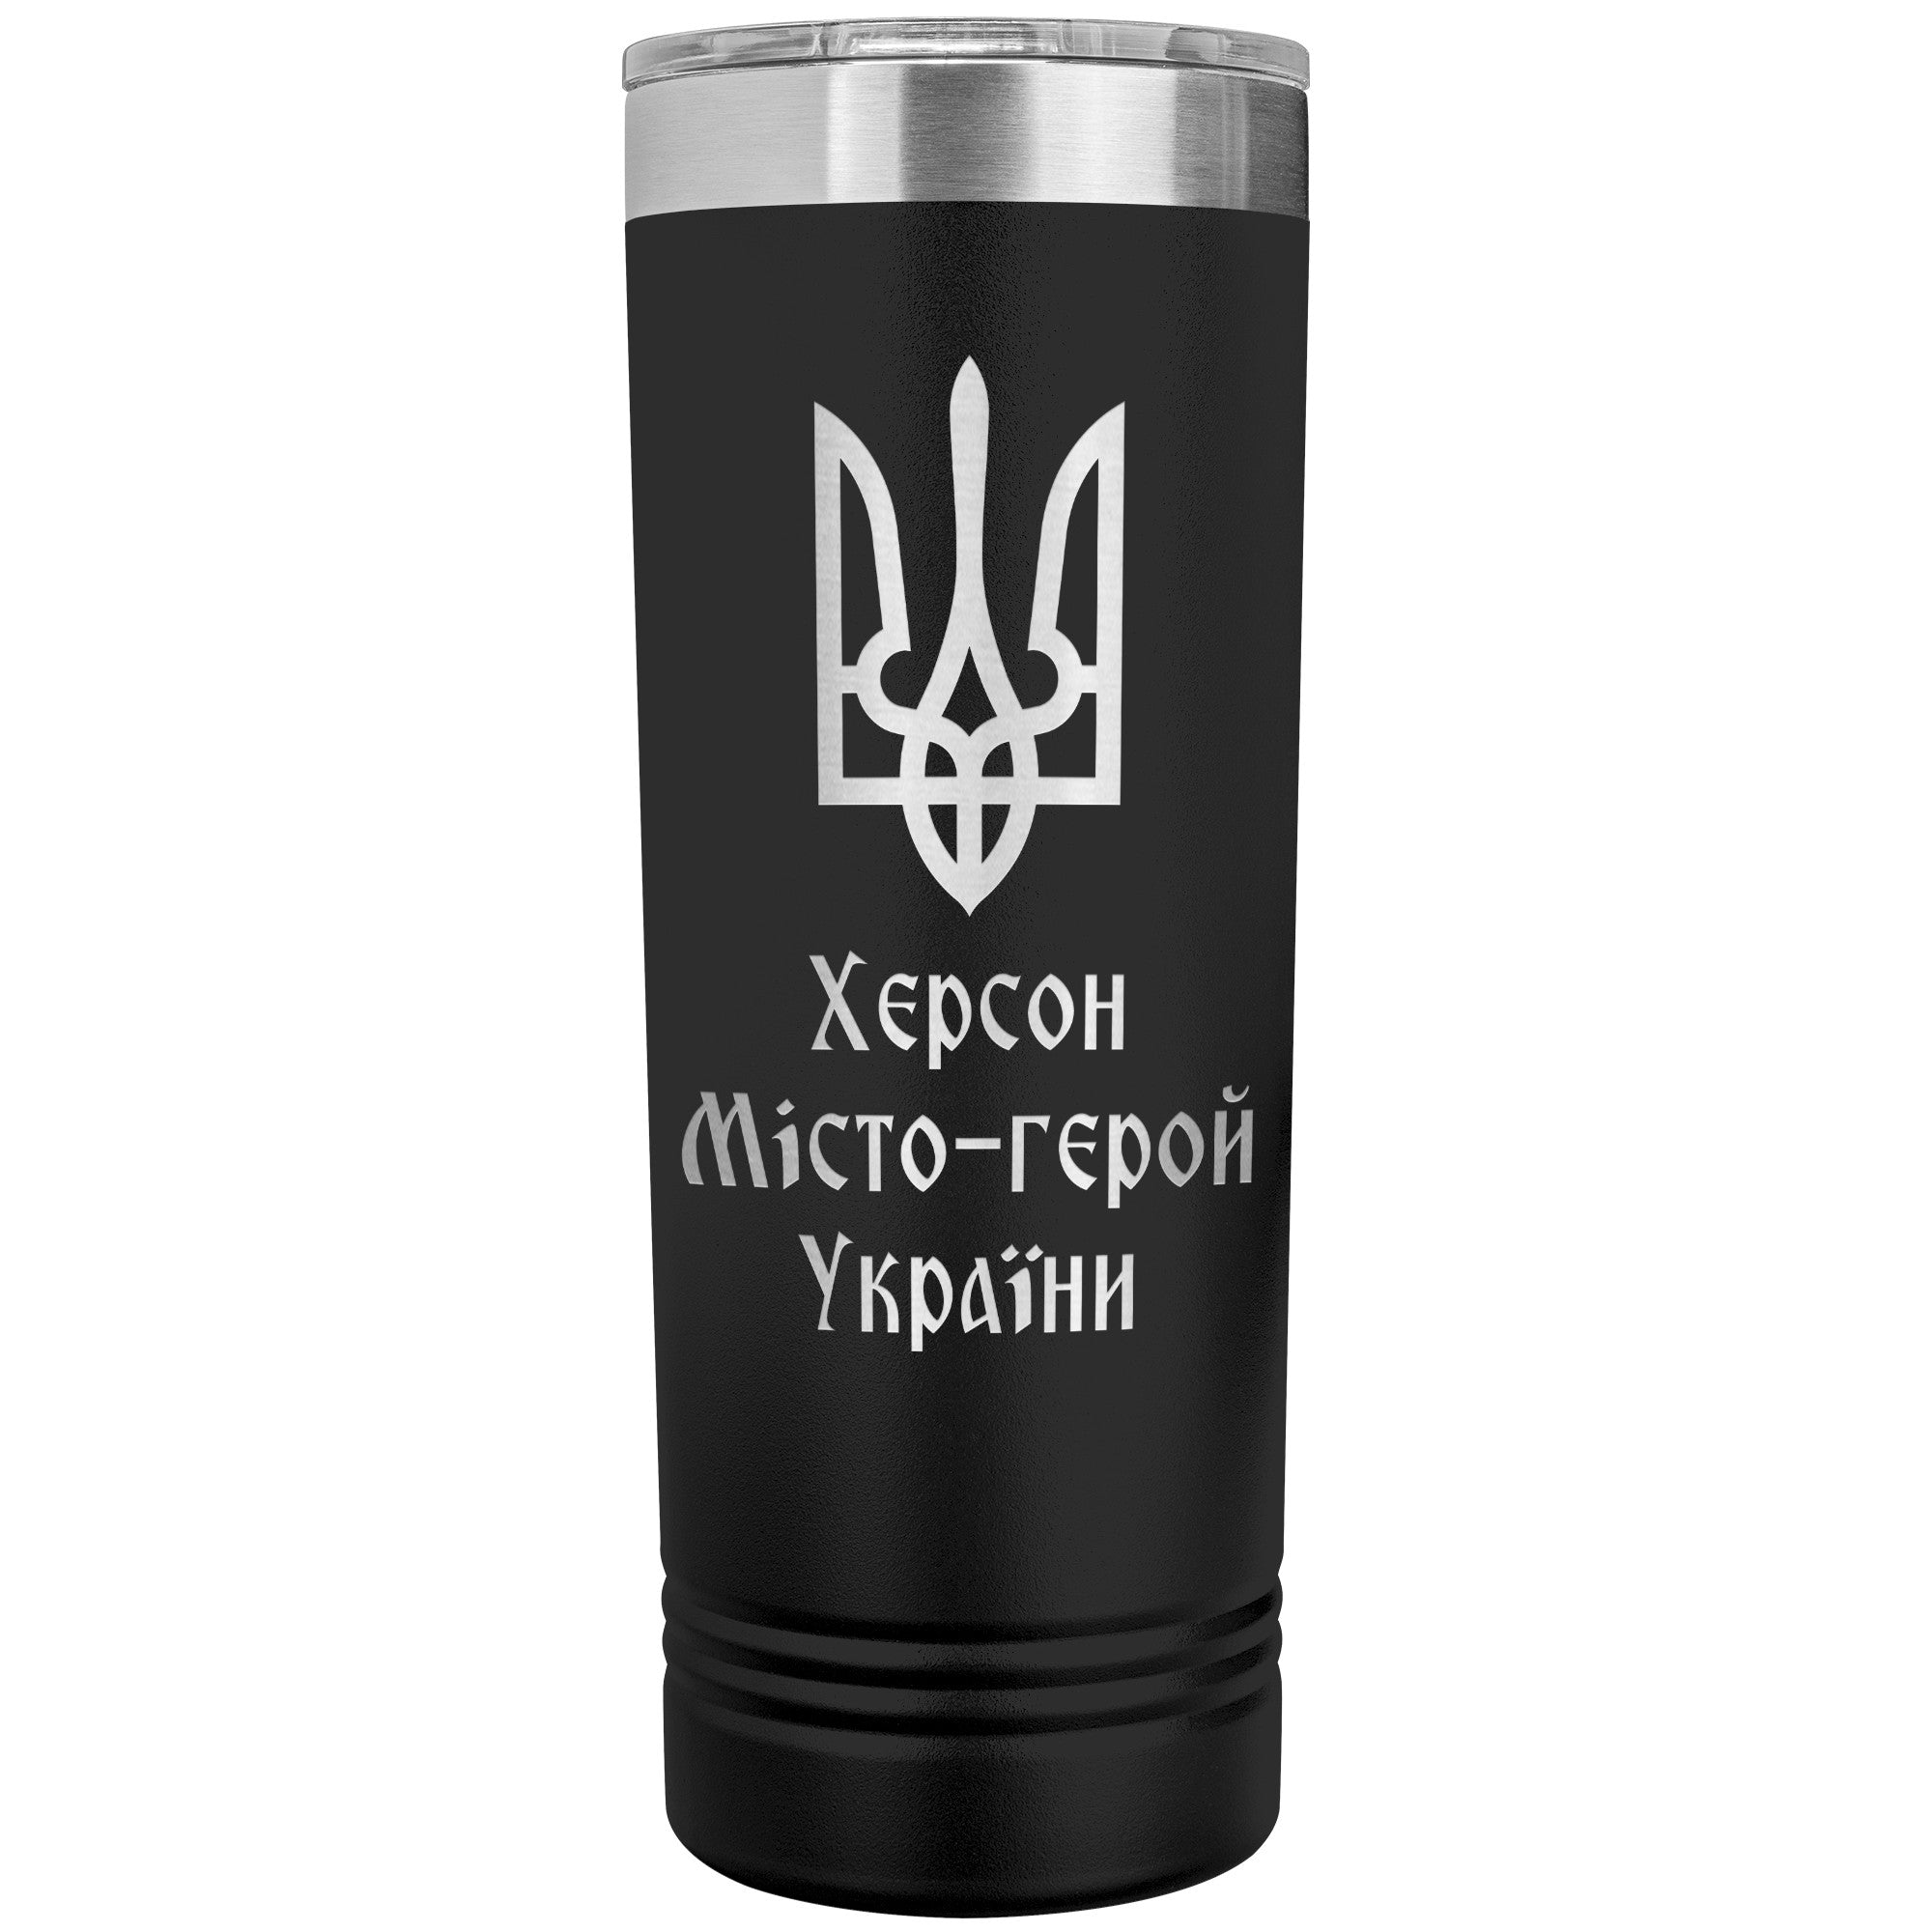 Kherson Hero City of Ukraine - 22oz Insulated Skinny Tumbler